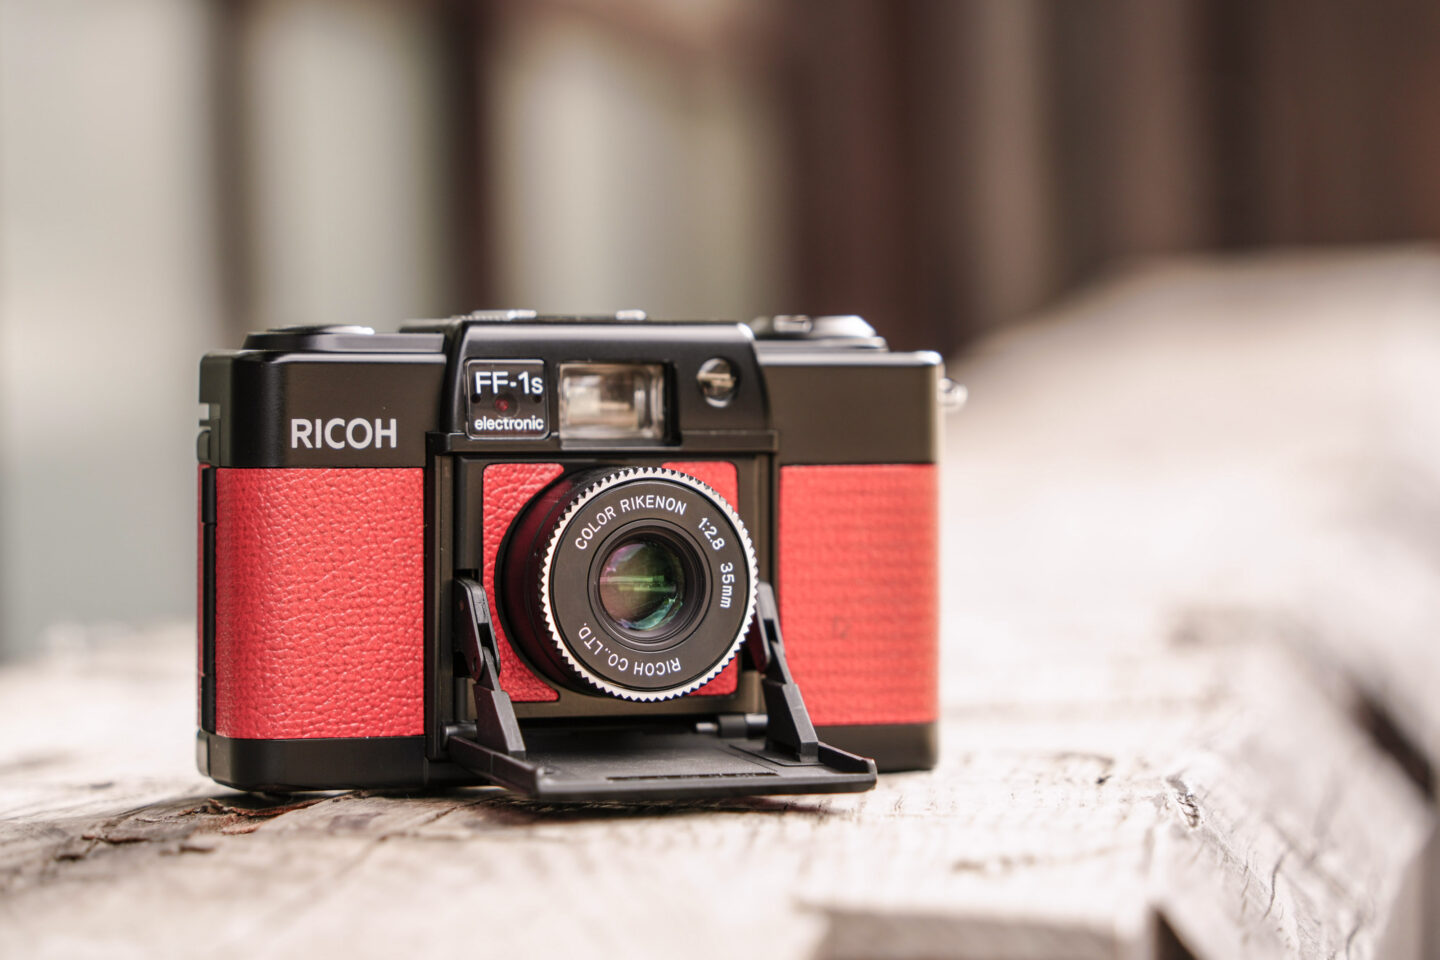 【フイルムカメラ】小さな沈胴式のコンパクトフイルムカメラ「リコー FF-1s」